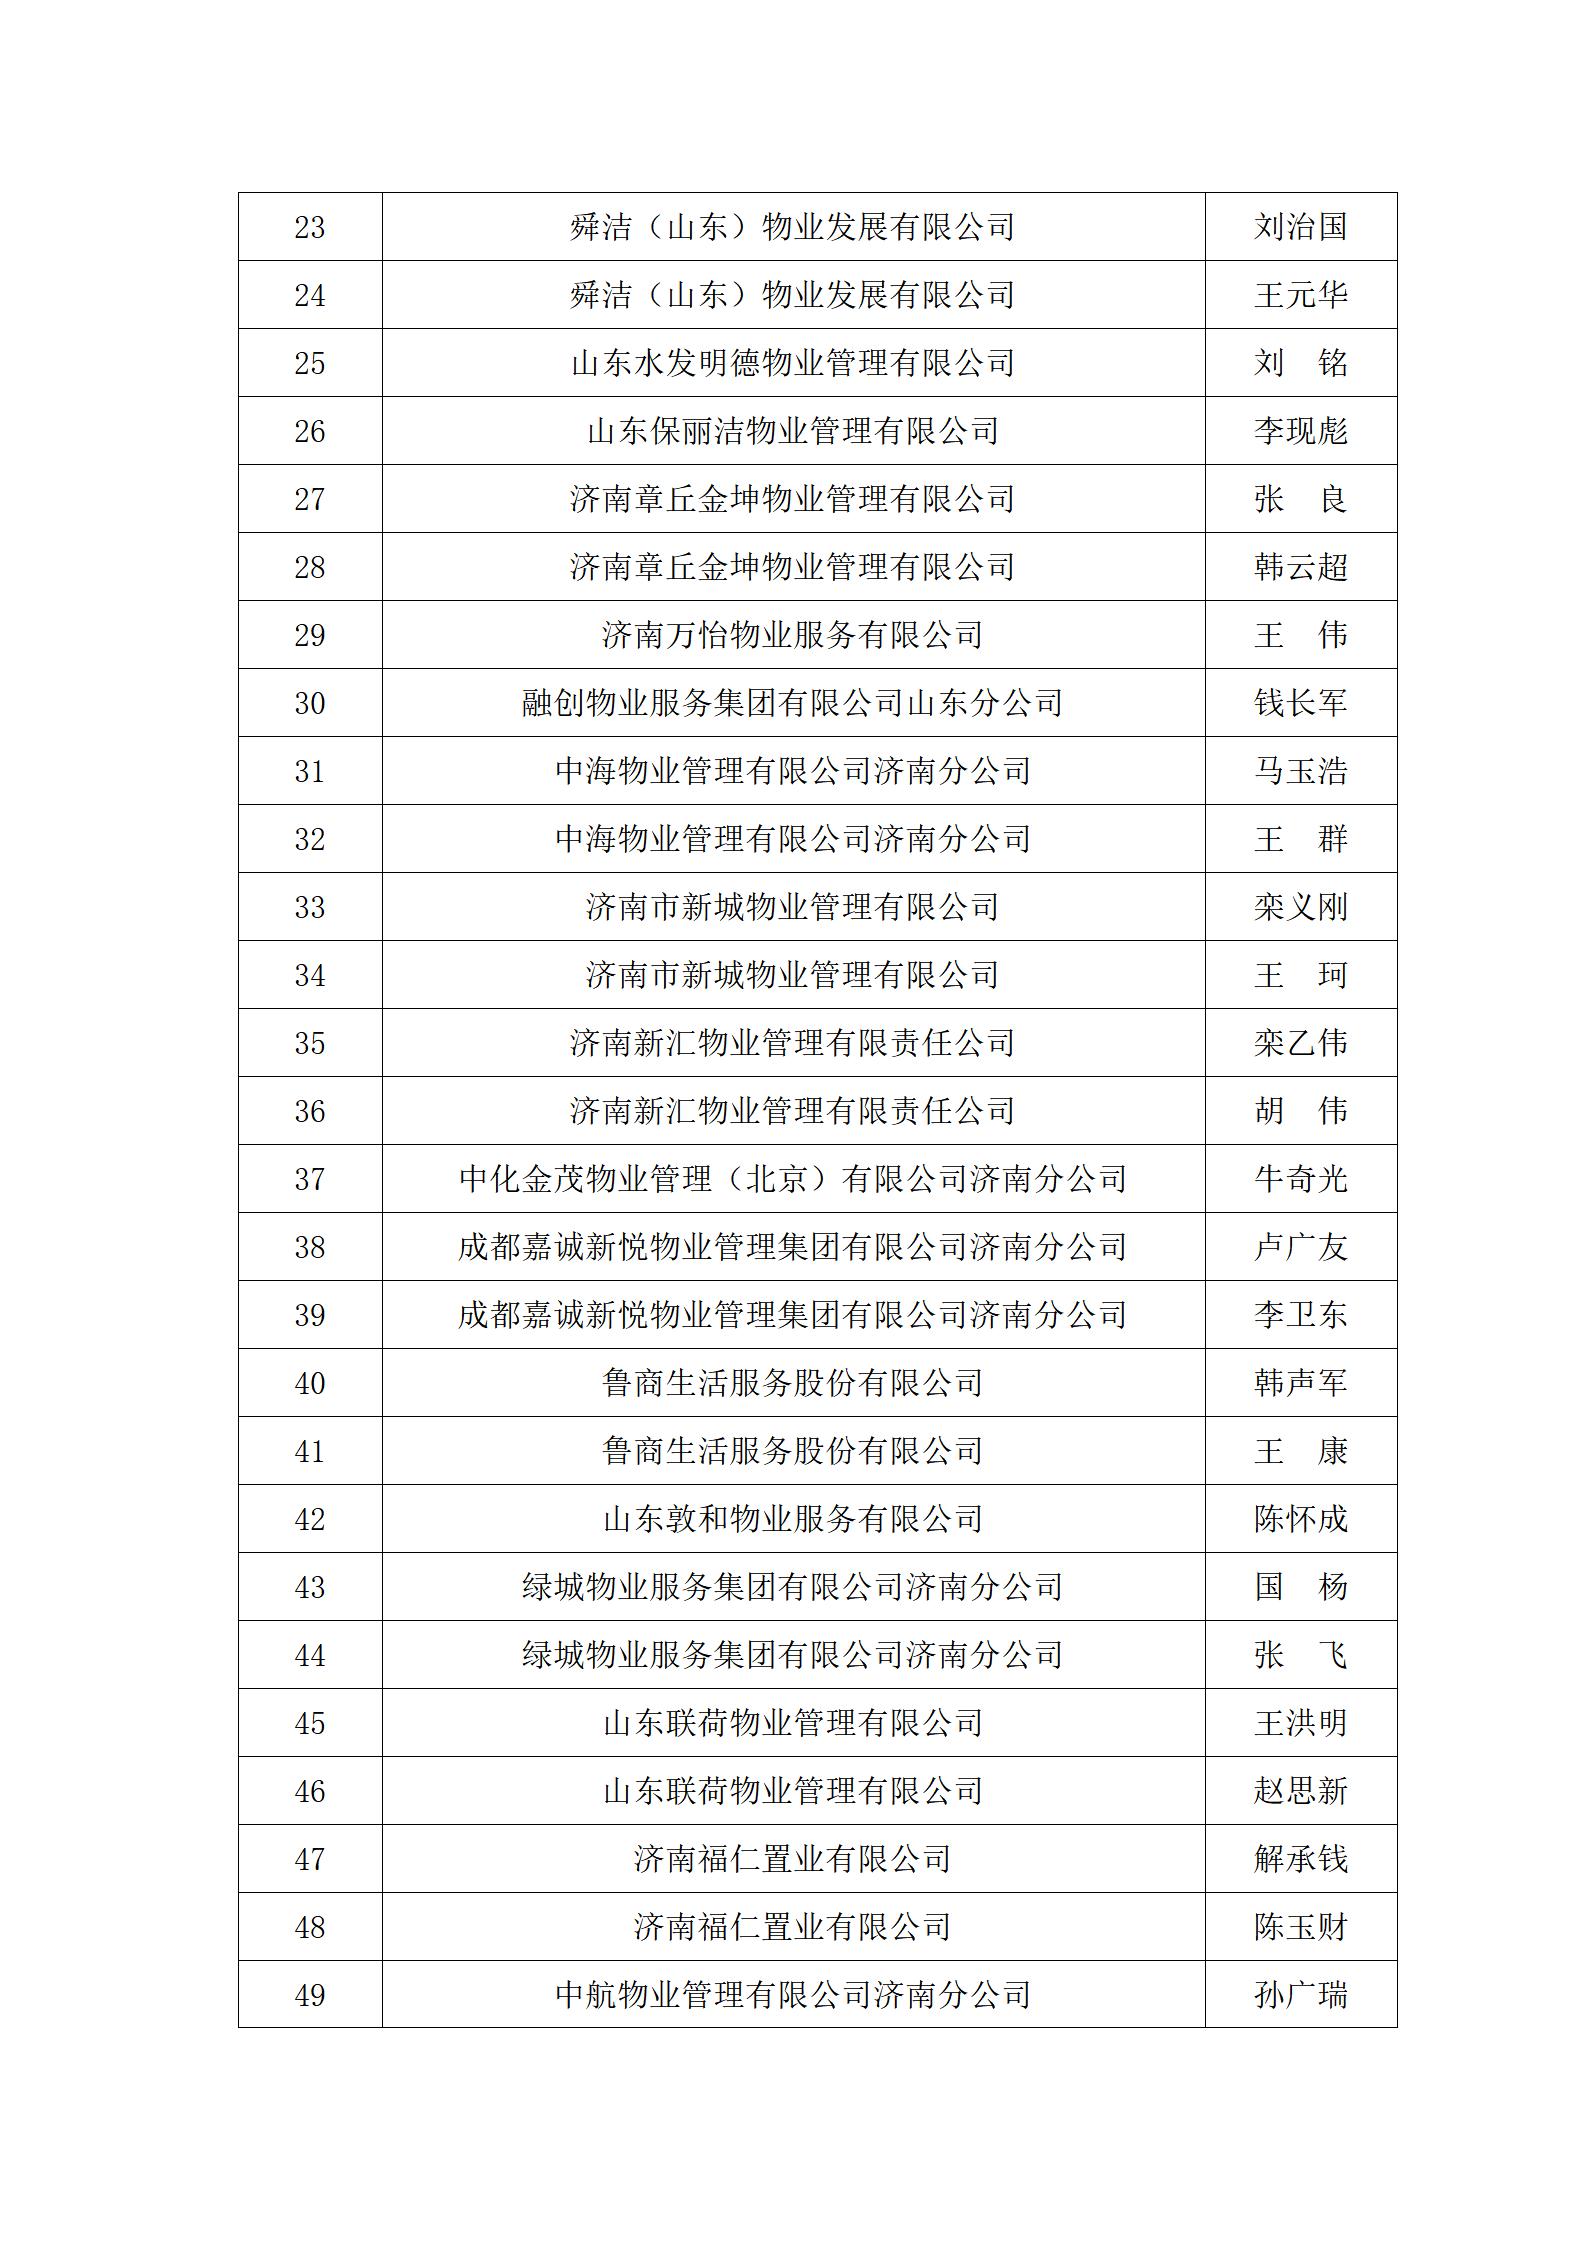 关于“明德杯”第六届济南市物业服务行业职业技能竞赛选手名单的公示_06